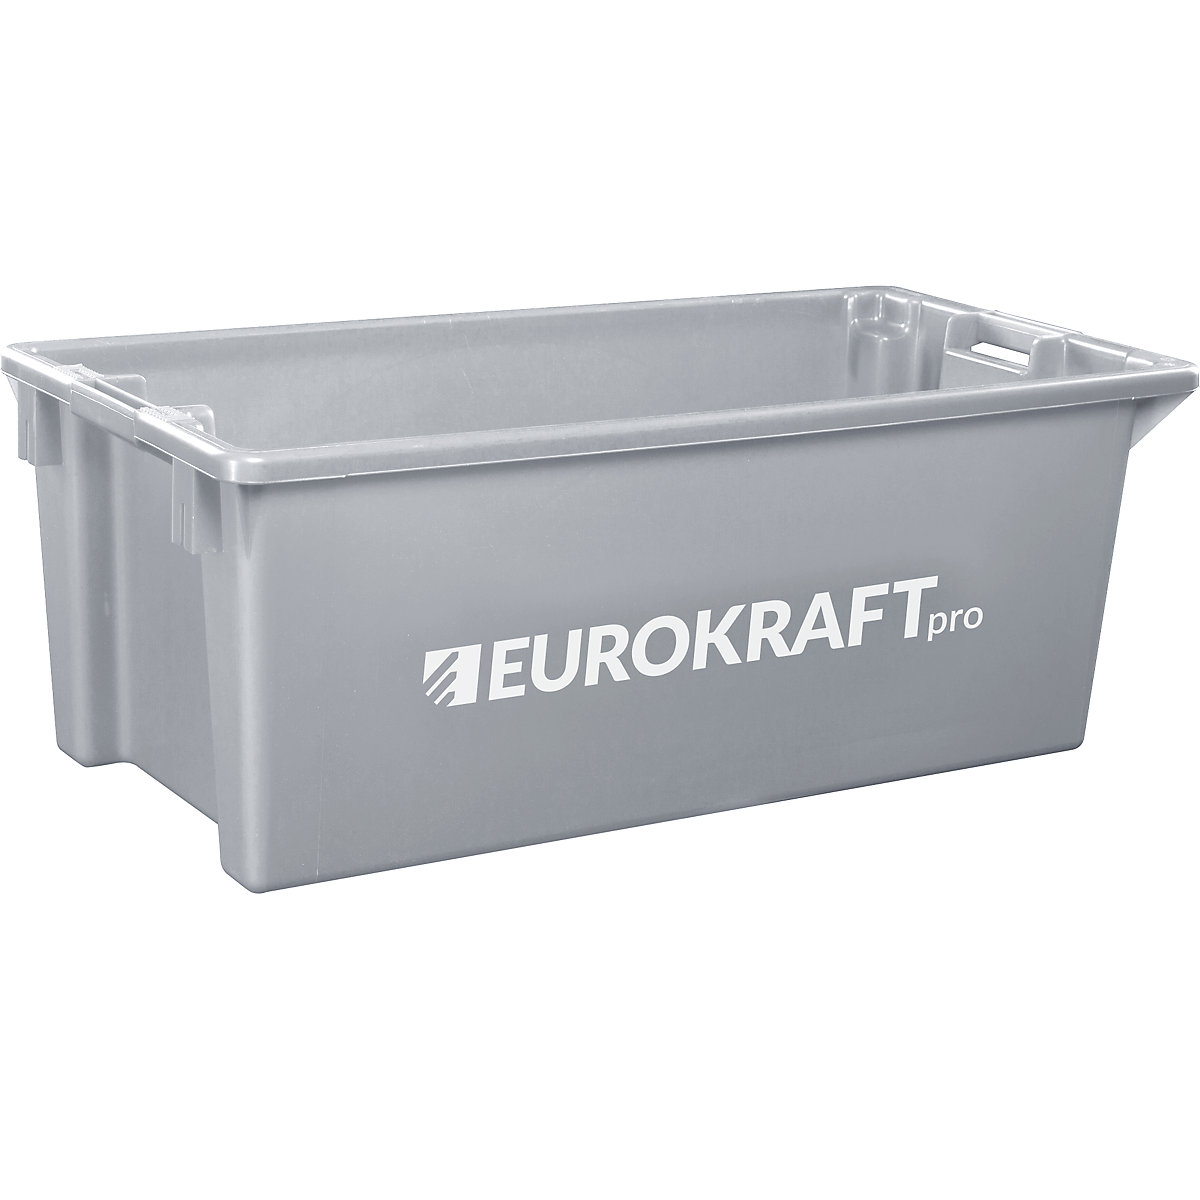 Recipiente empilhável giratório em polipropileno próprio para alimentos – eurokraft pro, capacidade 13 litros, UE 4 unid., paredes e fundo fechados, cinzento